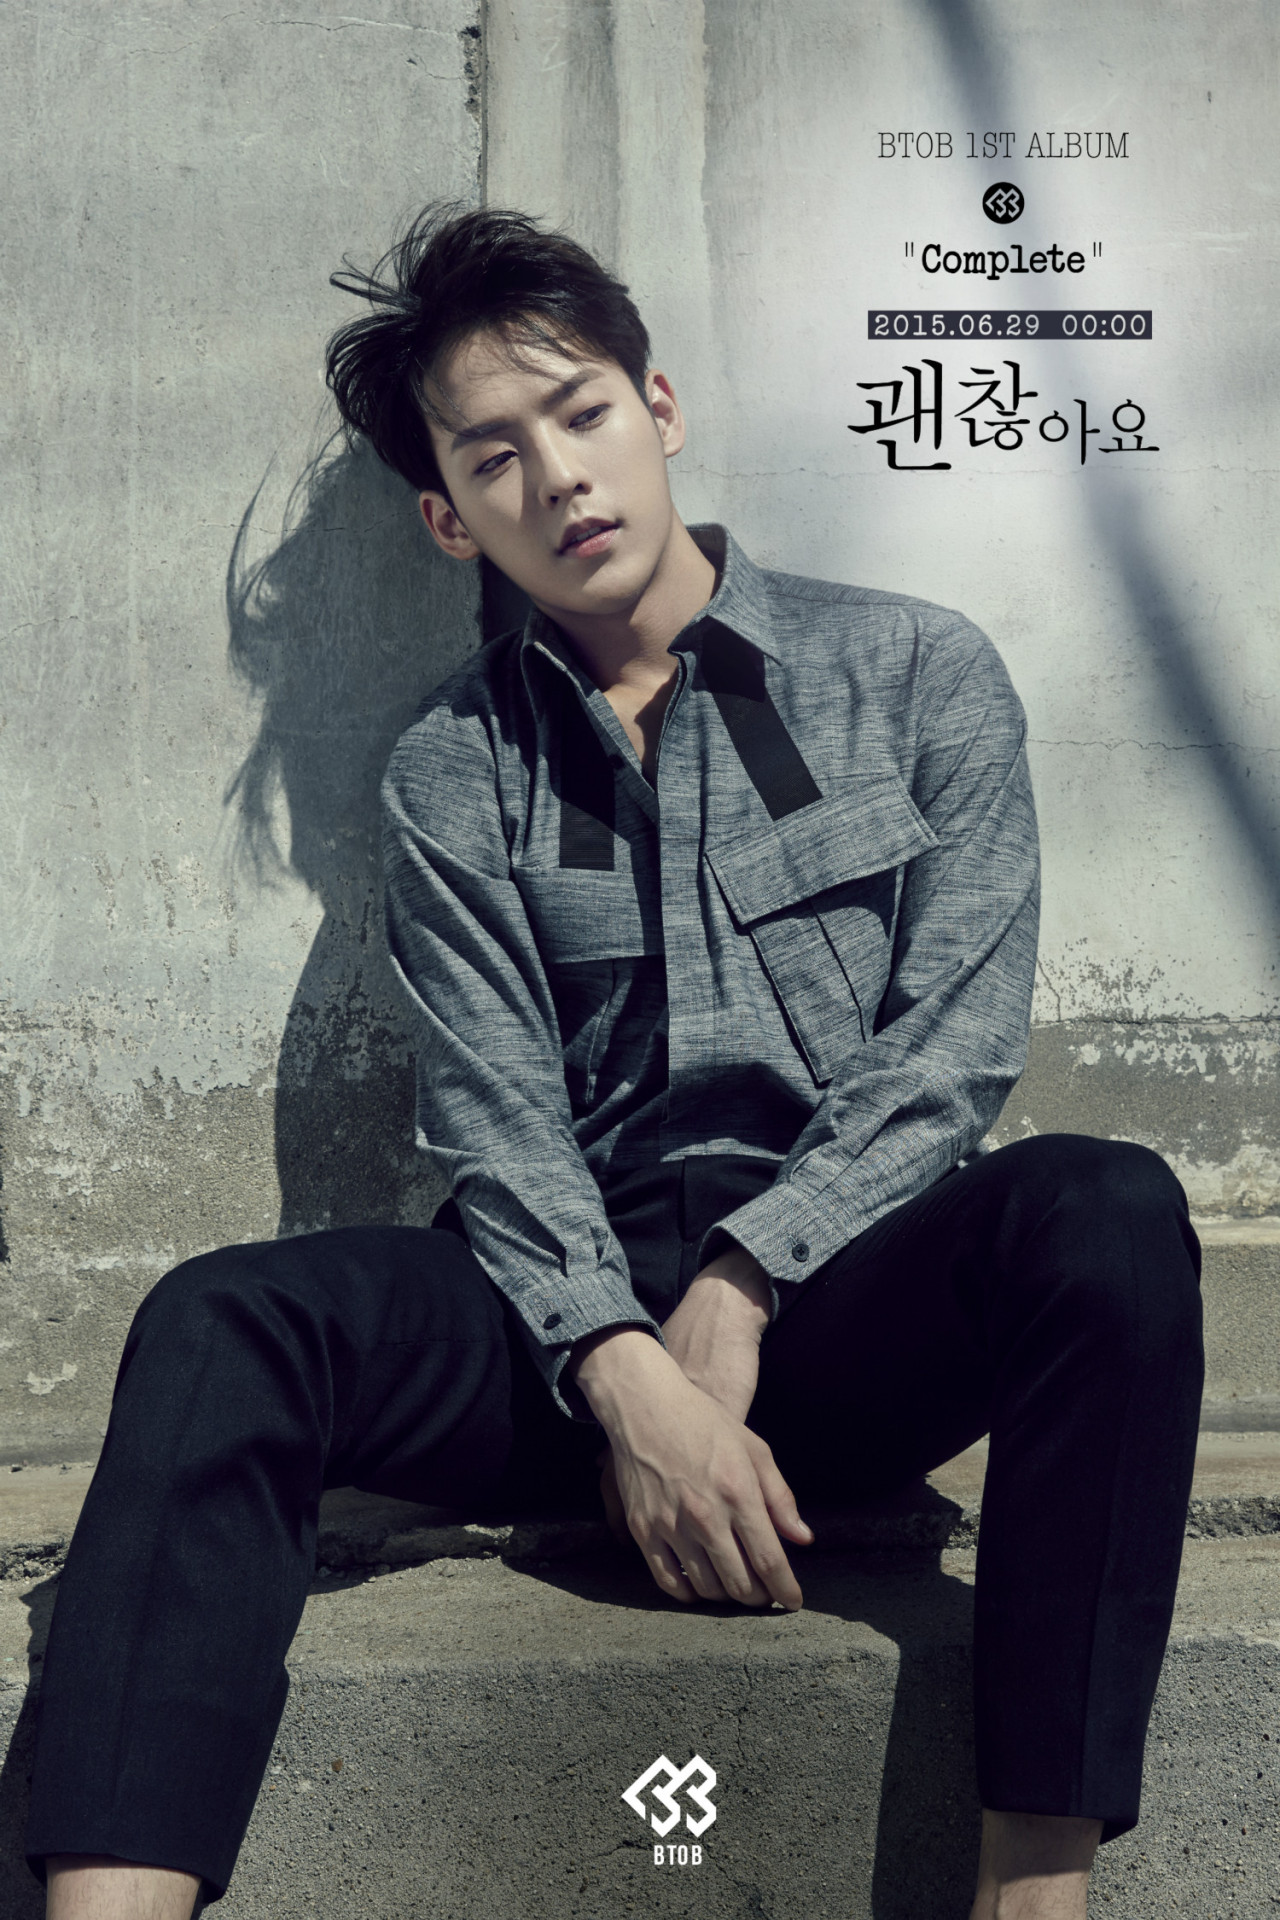 29일(월), BTOB 첫 정규 앨범 'Complete (타이틀곡:괜찮아요)' 발매 예정 | 인스티즈